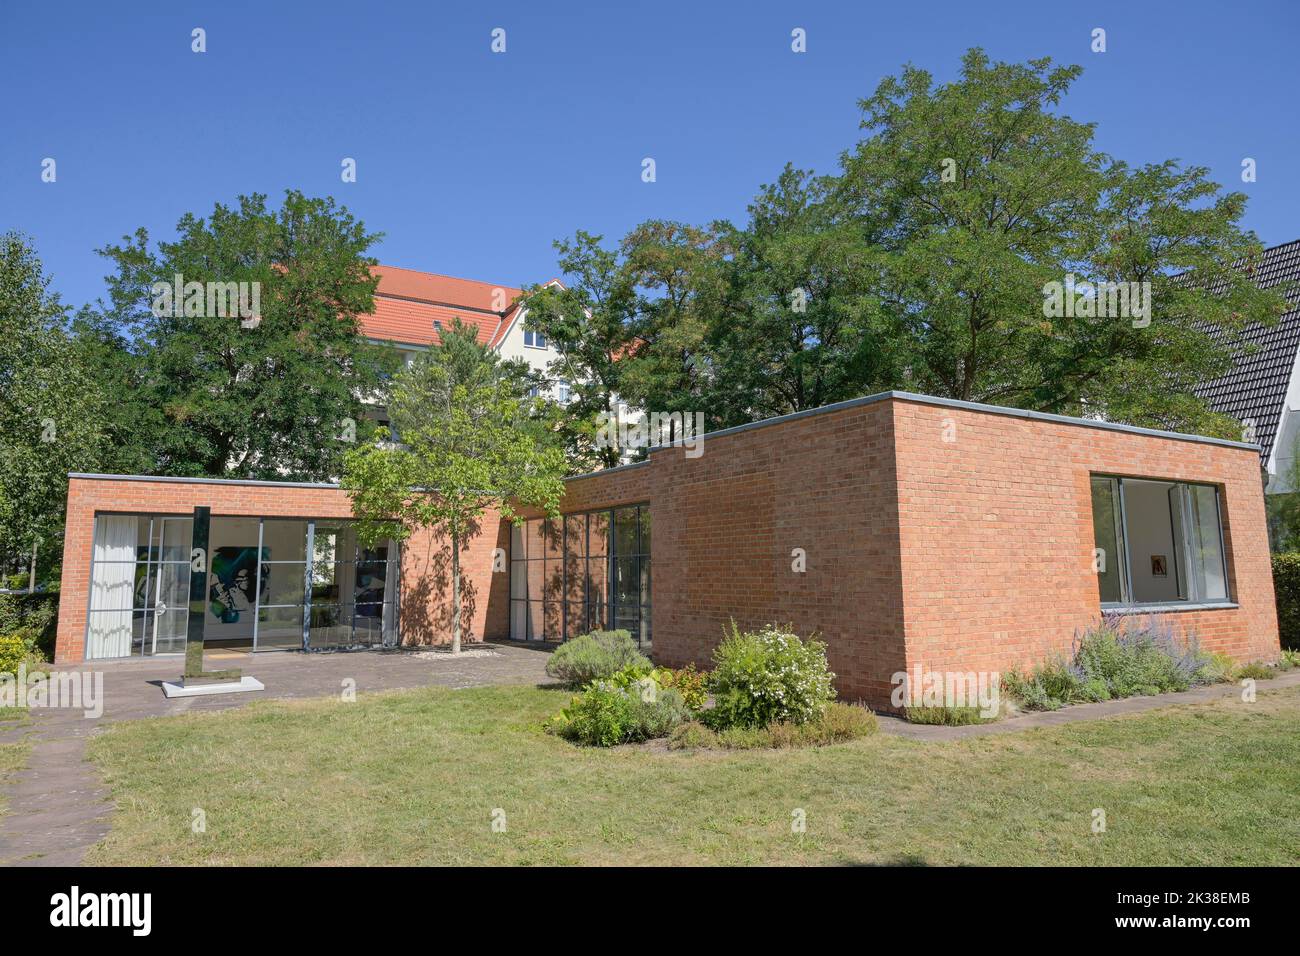 Mies van der Rohe Haus, Haus Lemke, Oberseestraße, Alt-Hohenschönhausen, Lichtenberg, Berlin, Deutschland Stock Photo